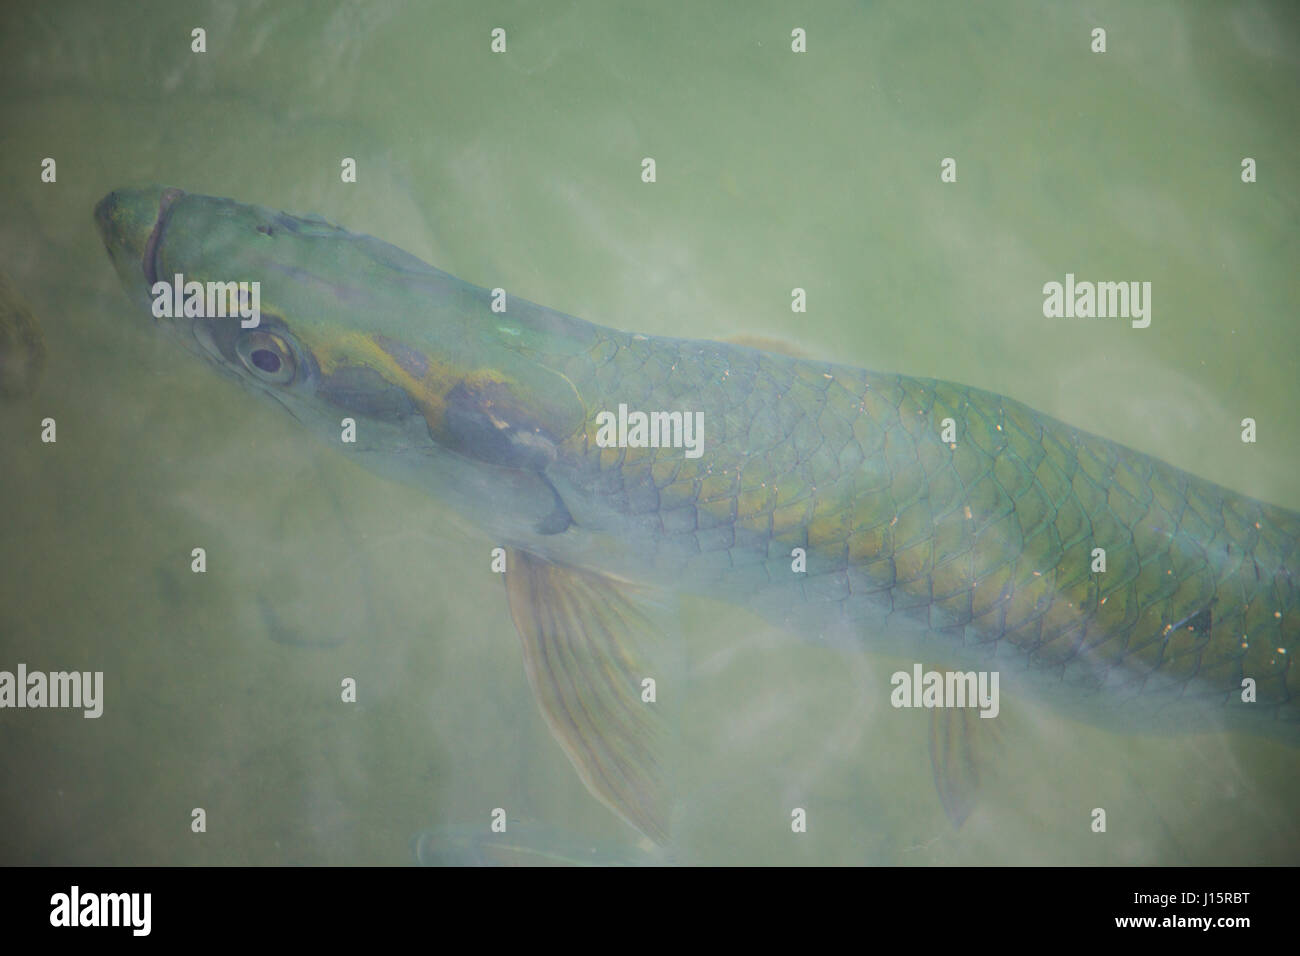 Künstlerische Foto ein Tarpon fischen knapp unterhalb der Oberfläche, ein Fliegenfischer-Traum! Stockfoto